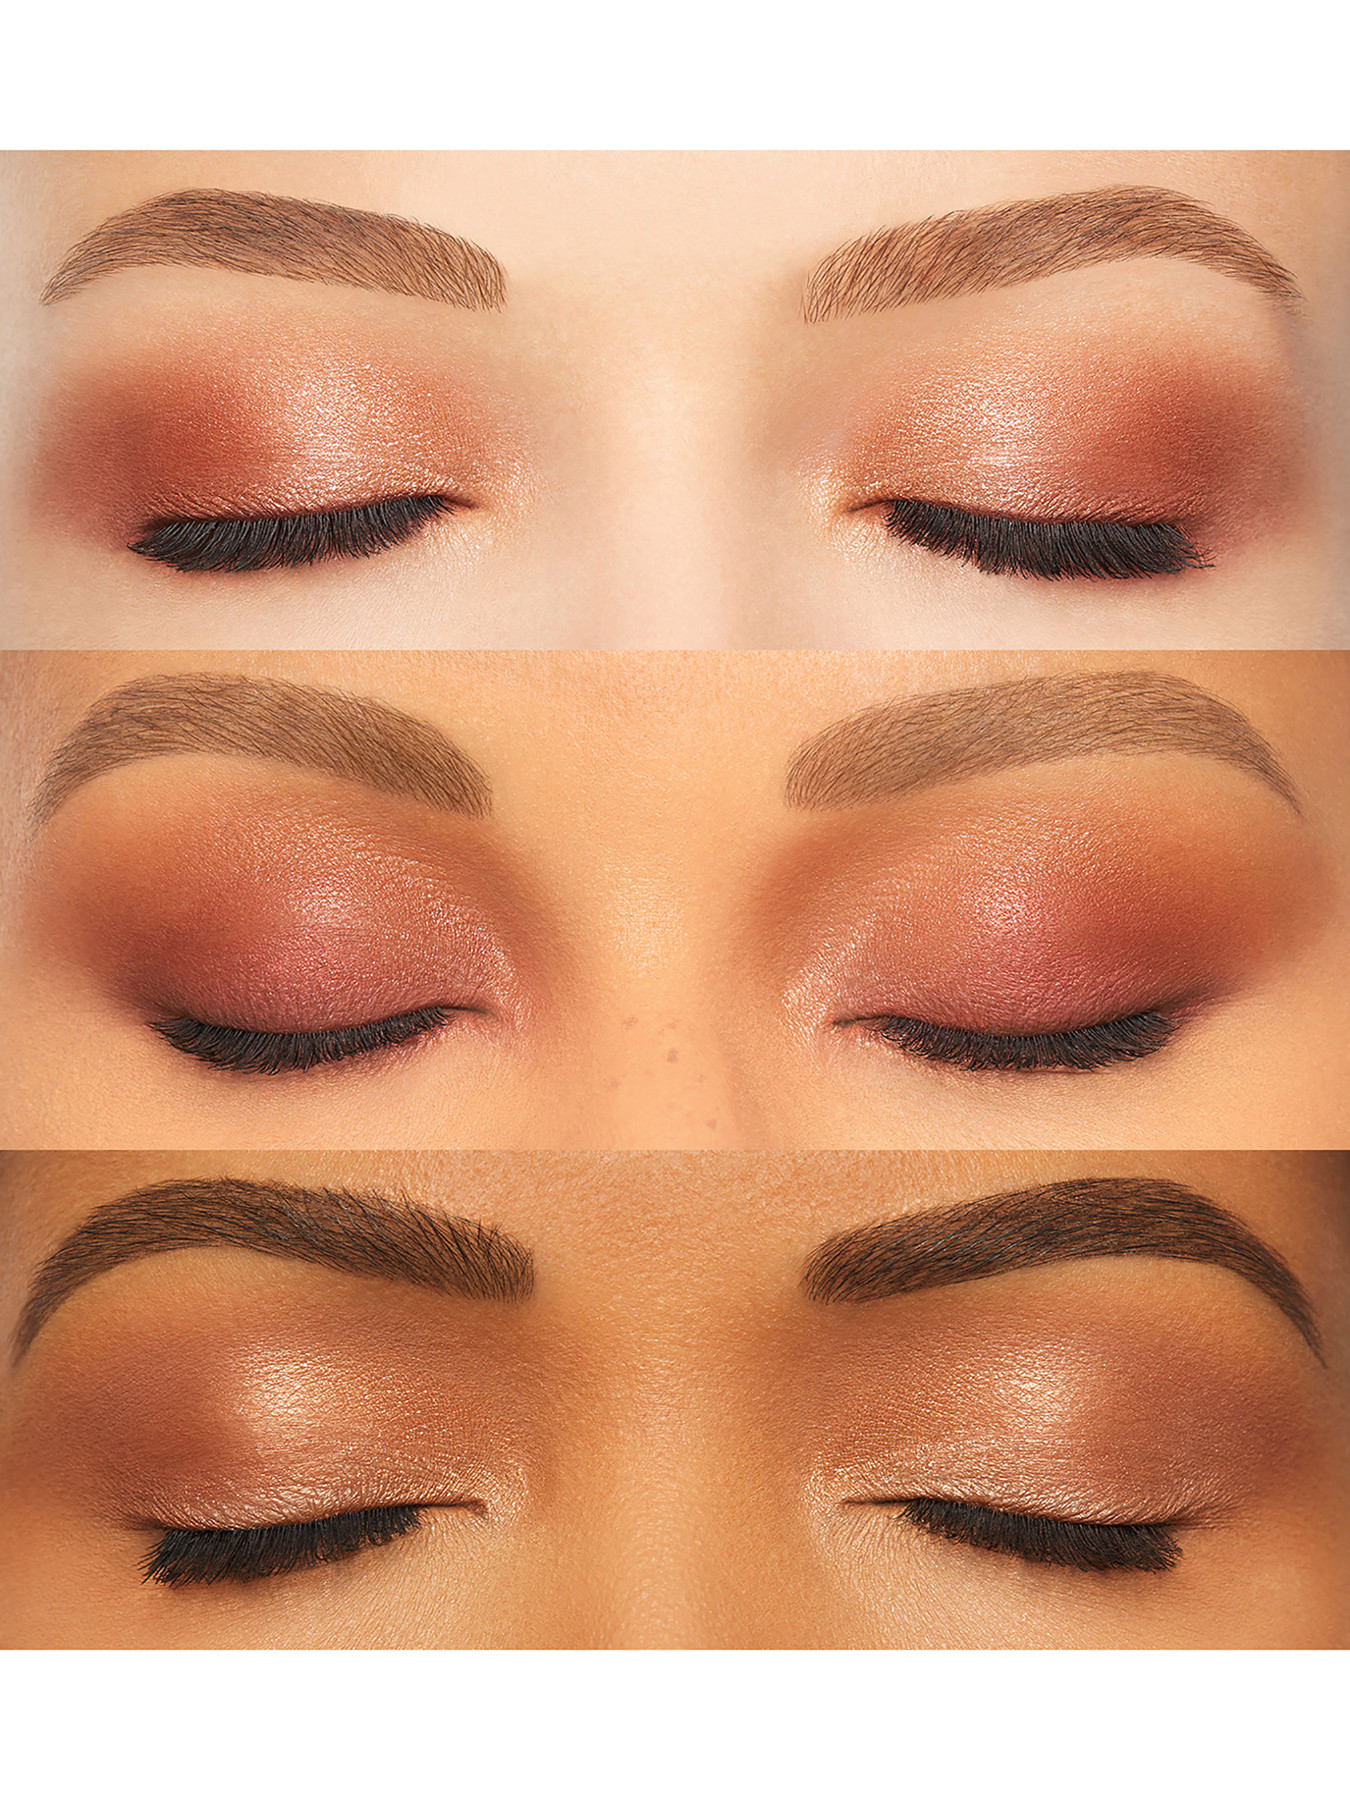 NARS Summer Solstice Eyeshadow Palette | Fenwick